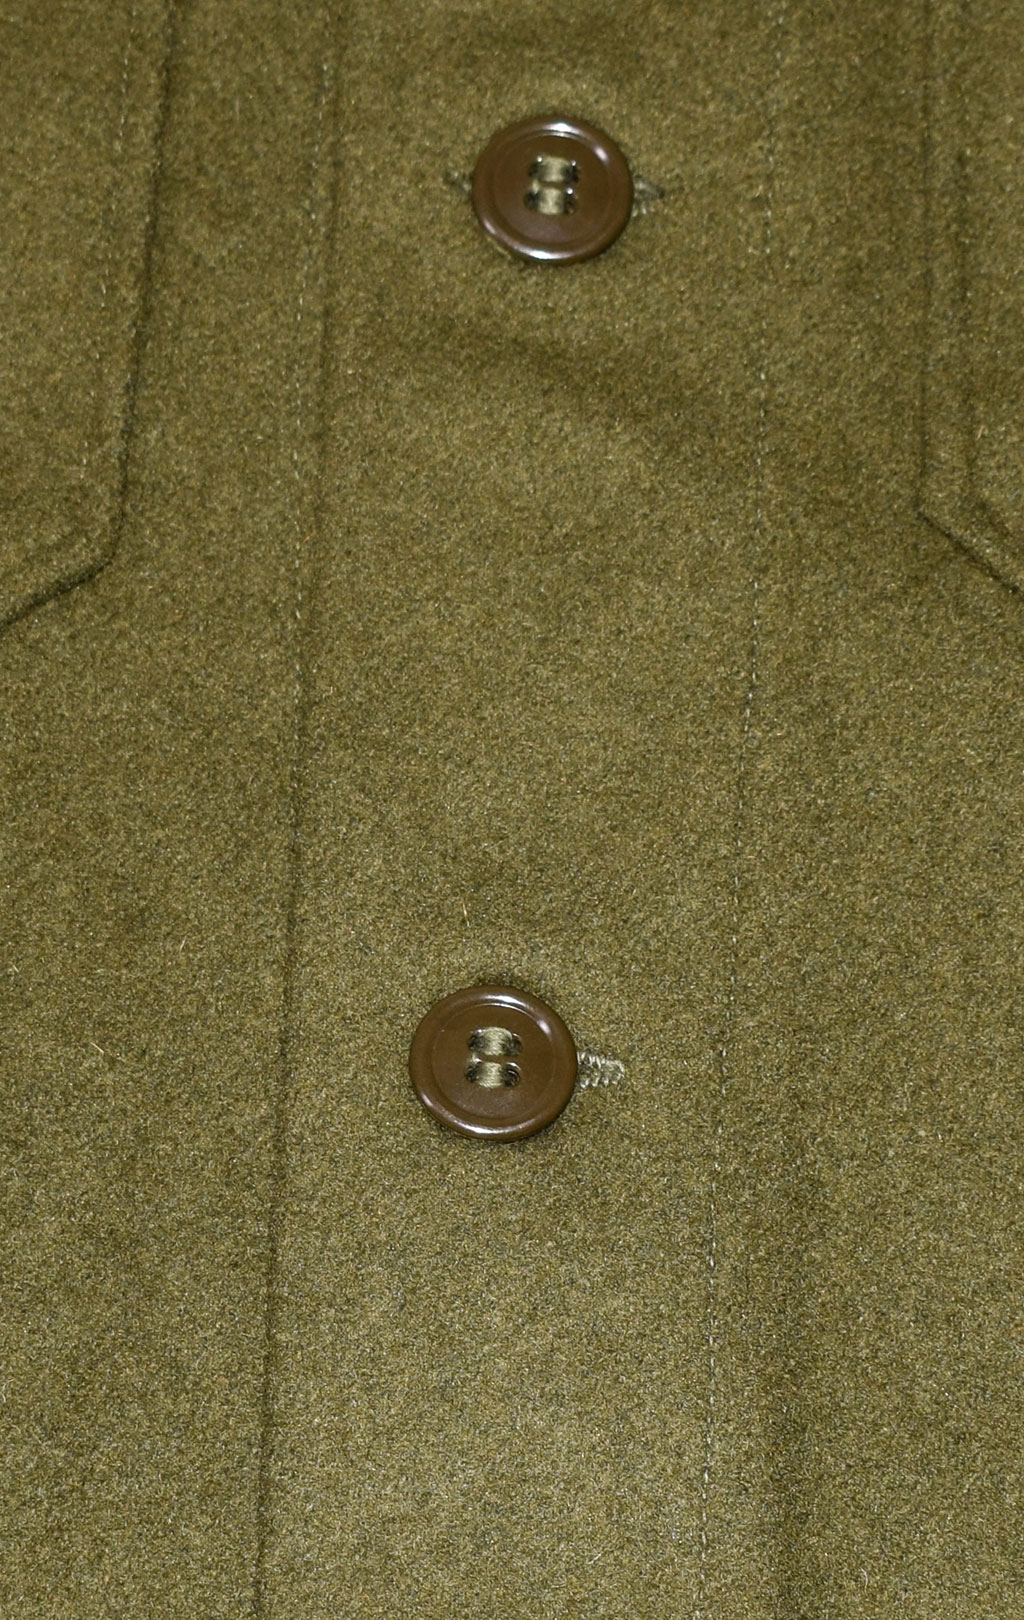 Рубашка M-51 шерсть15%/нейлон85% Korean War Era США